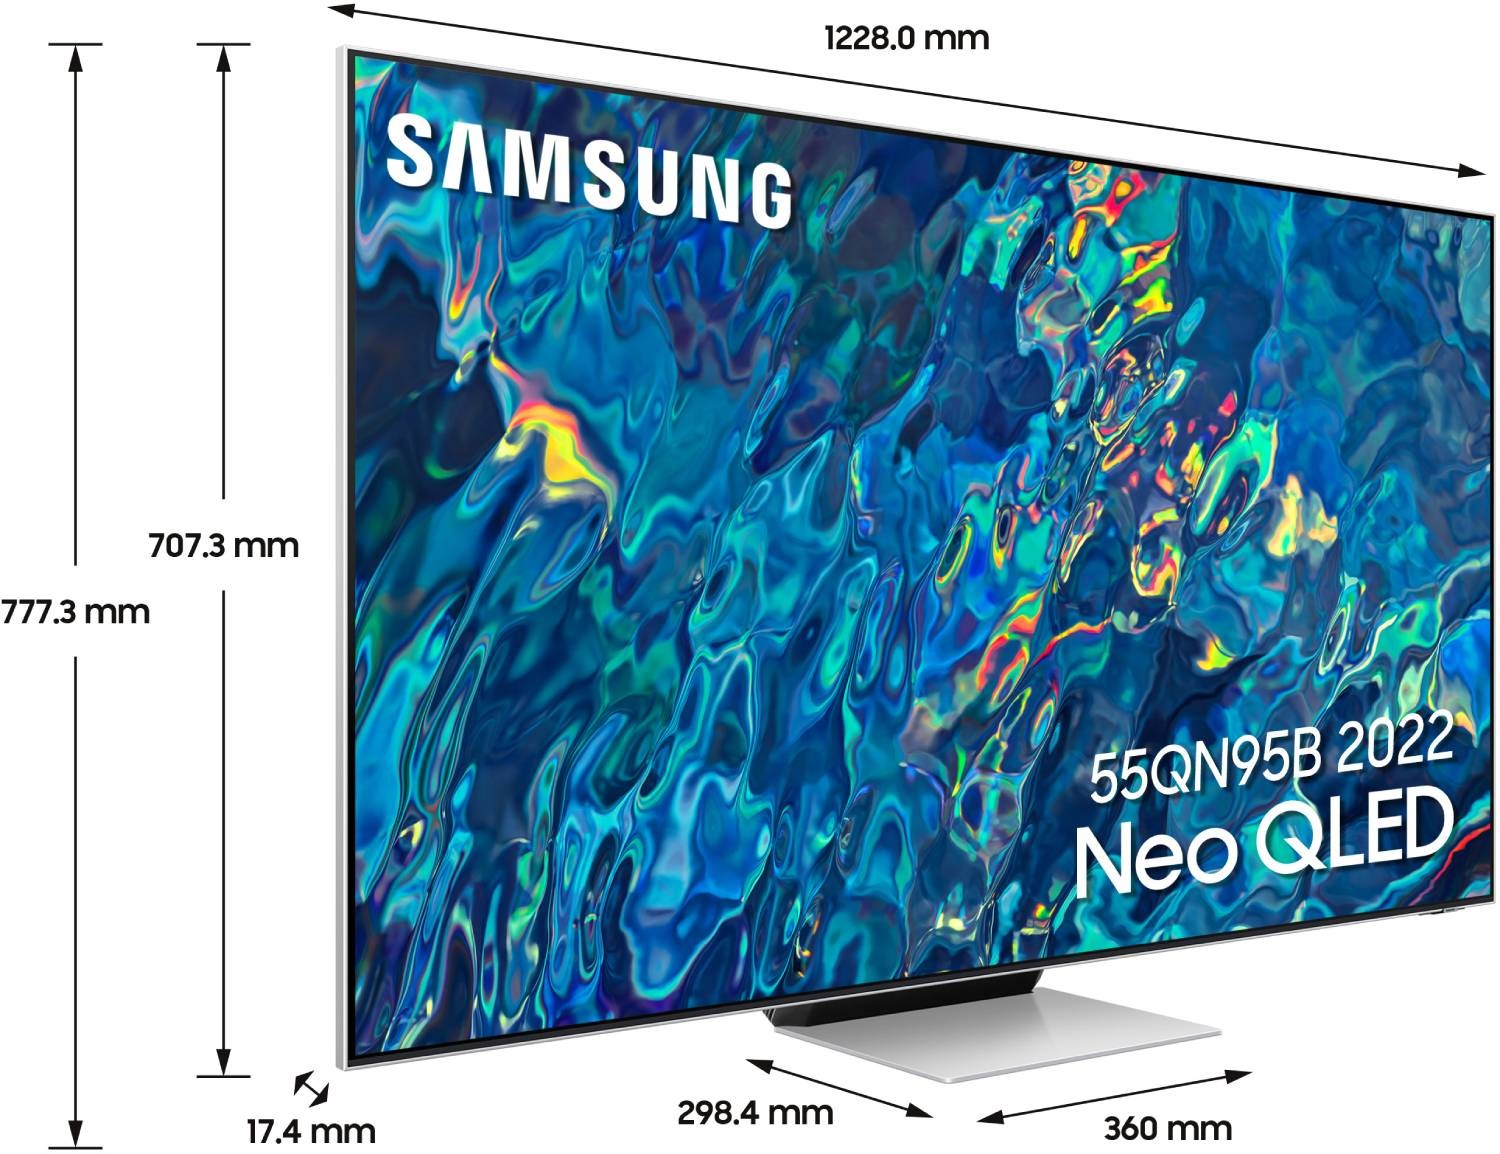 SAMSUNG TV Neo QLED 4K 138 cm TV Neo QLED QE55QN95B 4K 138 cm - QE55QN95B